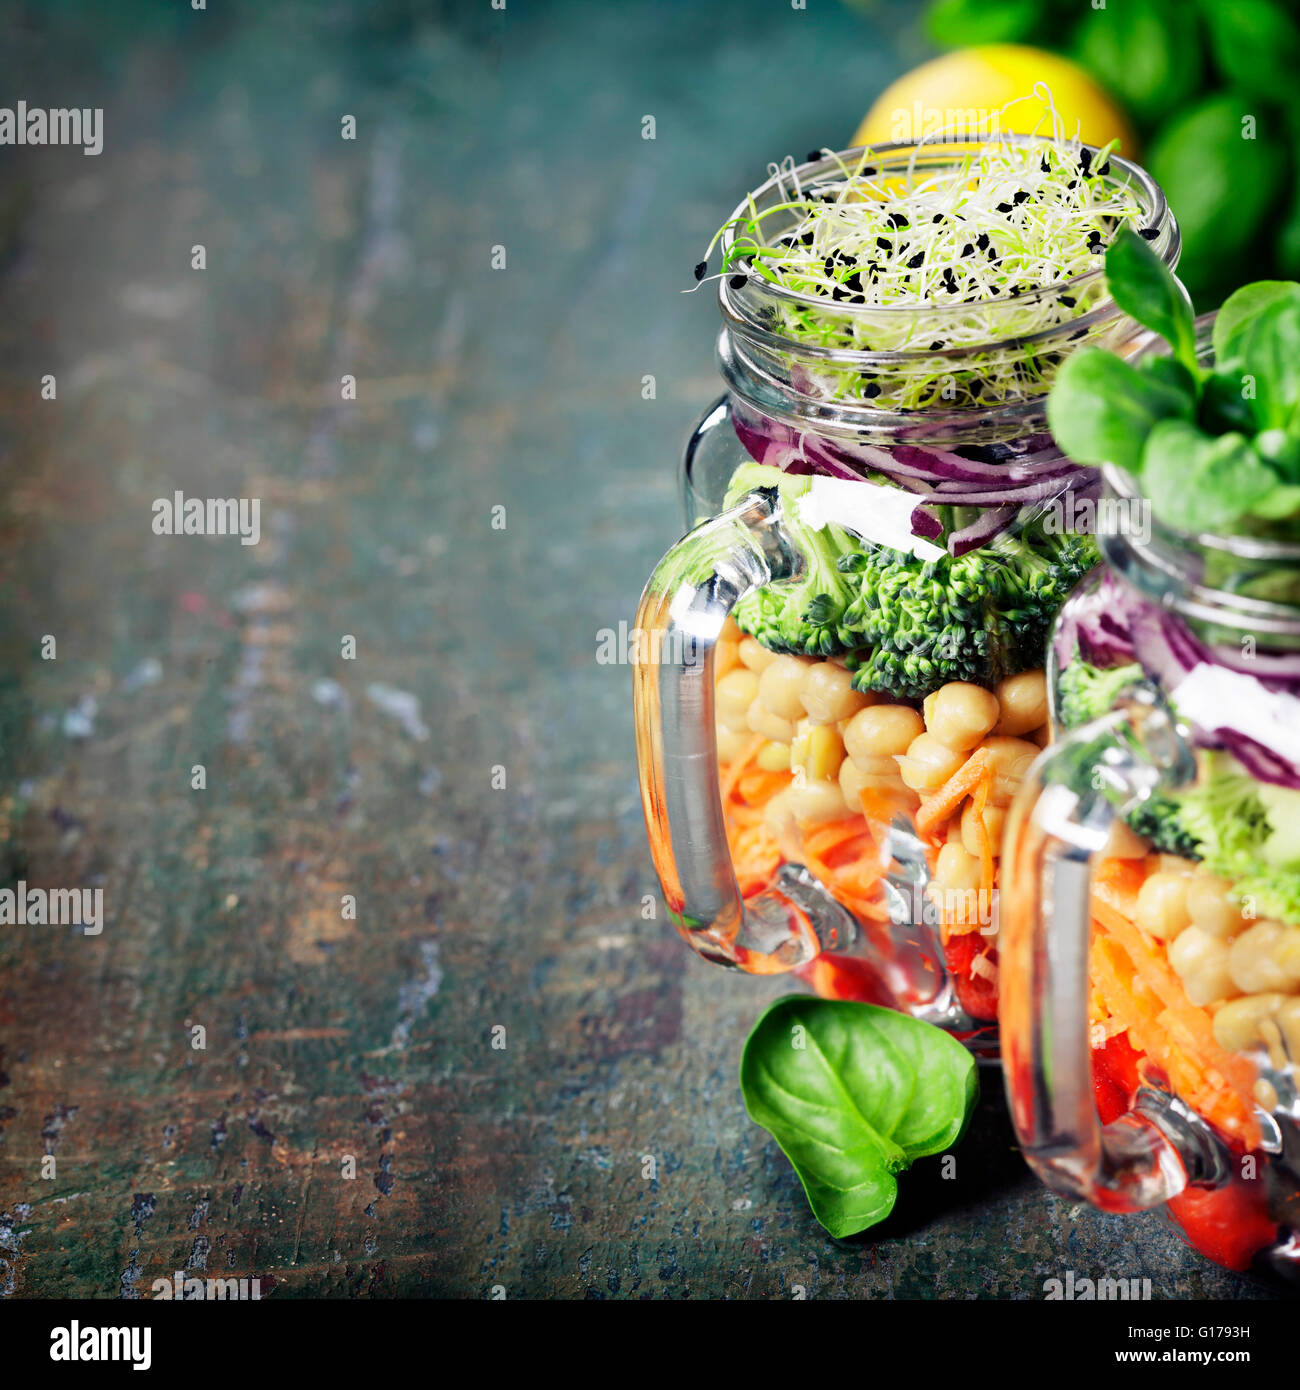 Gesunde hausgemachte Mason Jar-Salat mit Kichererbsen und Gemüse - gesunde Ernährung, Diät, Detox, sauber Essen oder vegetarische Konzept Stockfoto